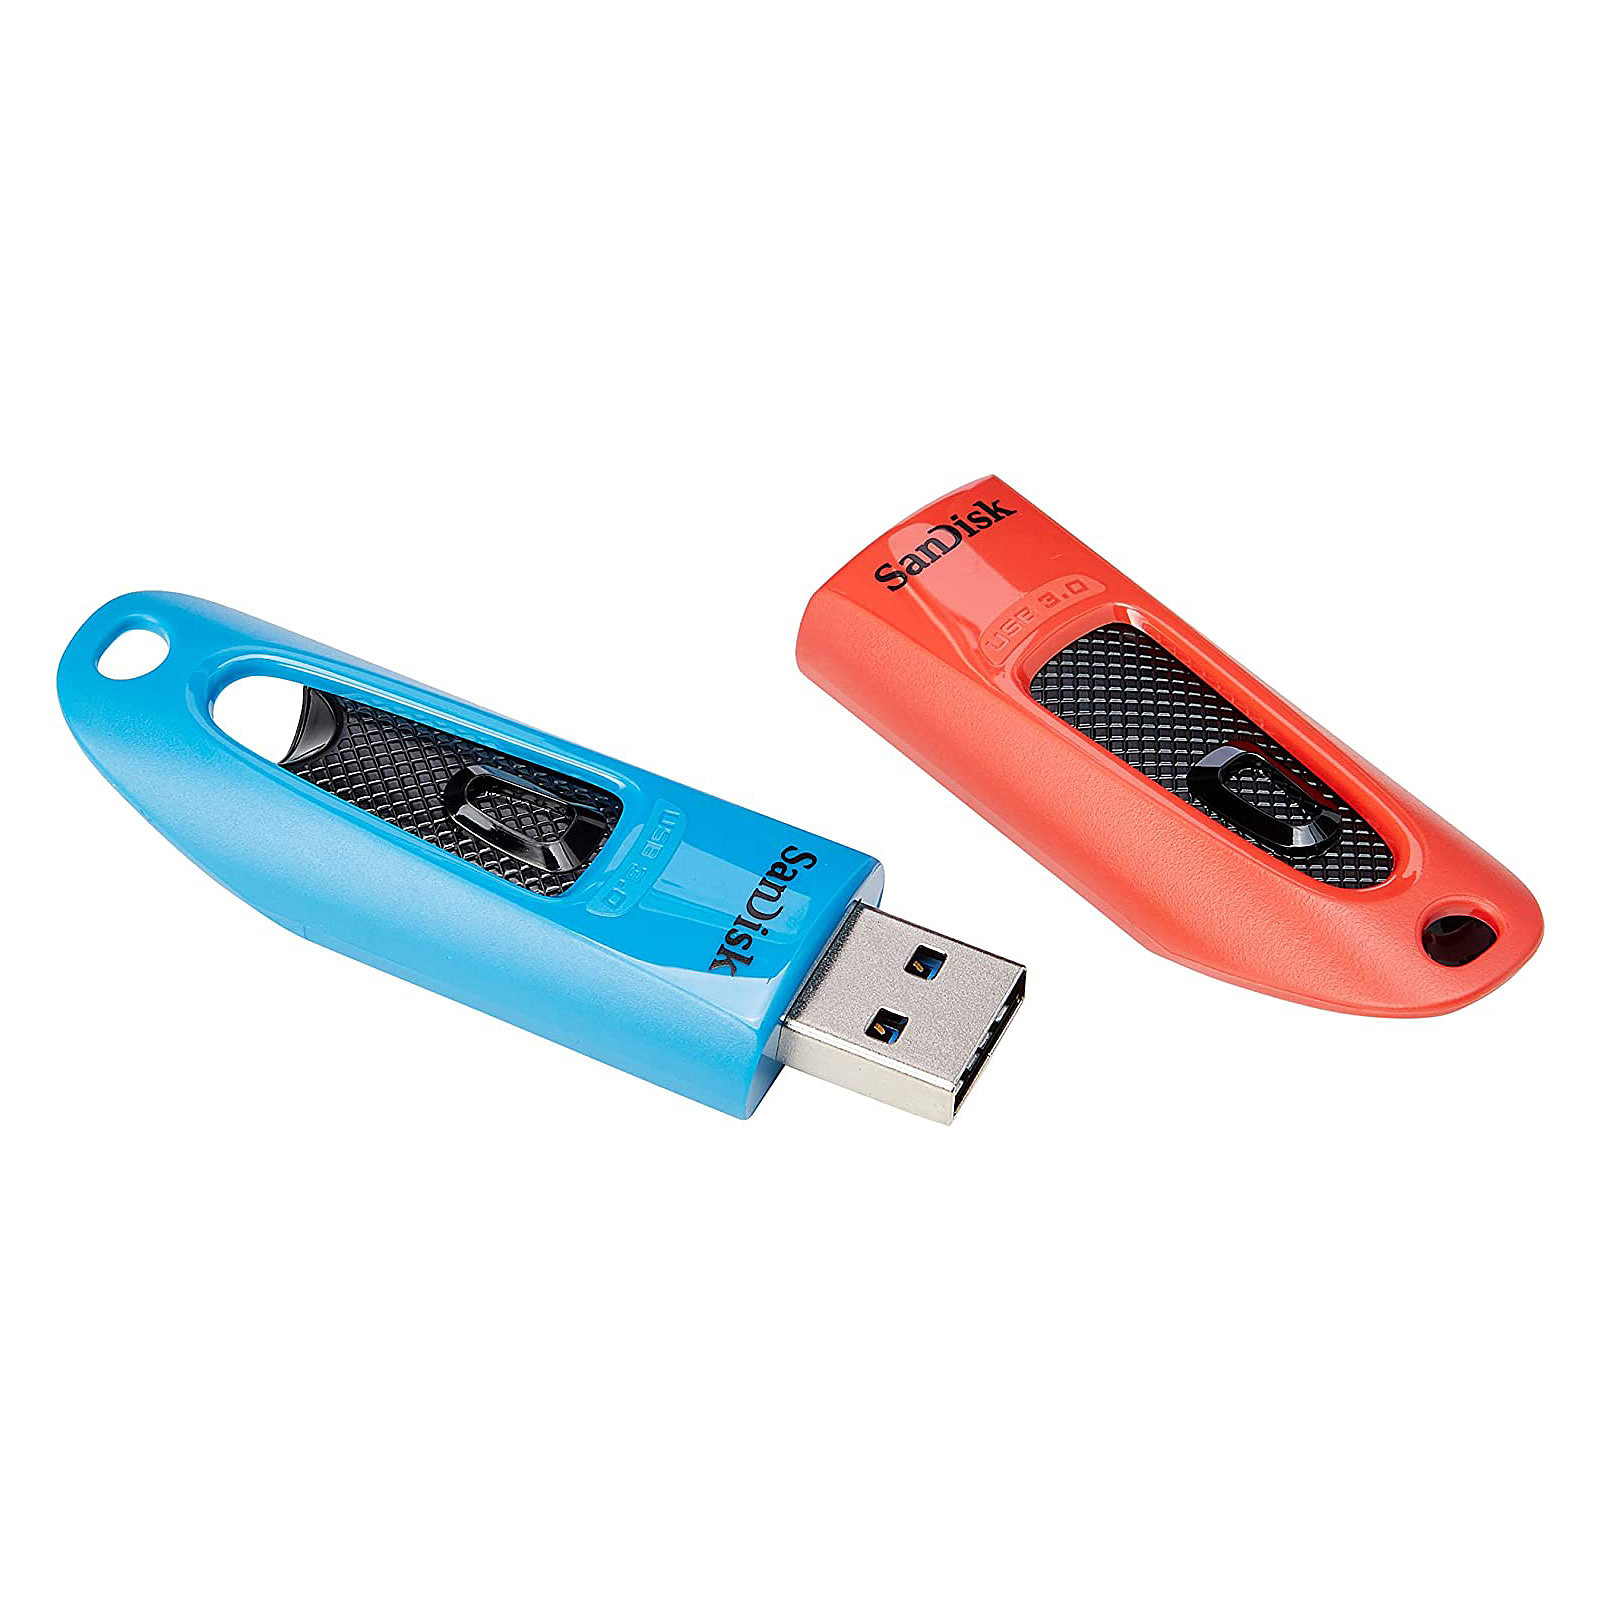 SanDisk Ultra USB 3.0 32 Go Bleu/Rouge (Pack de 2) - Cle USB Sandisk